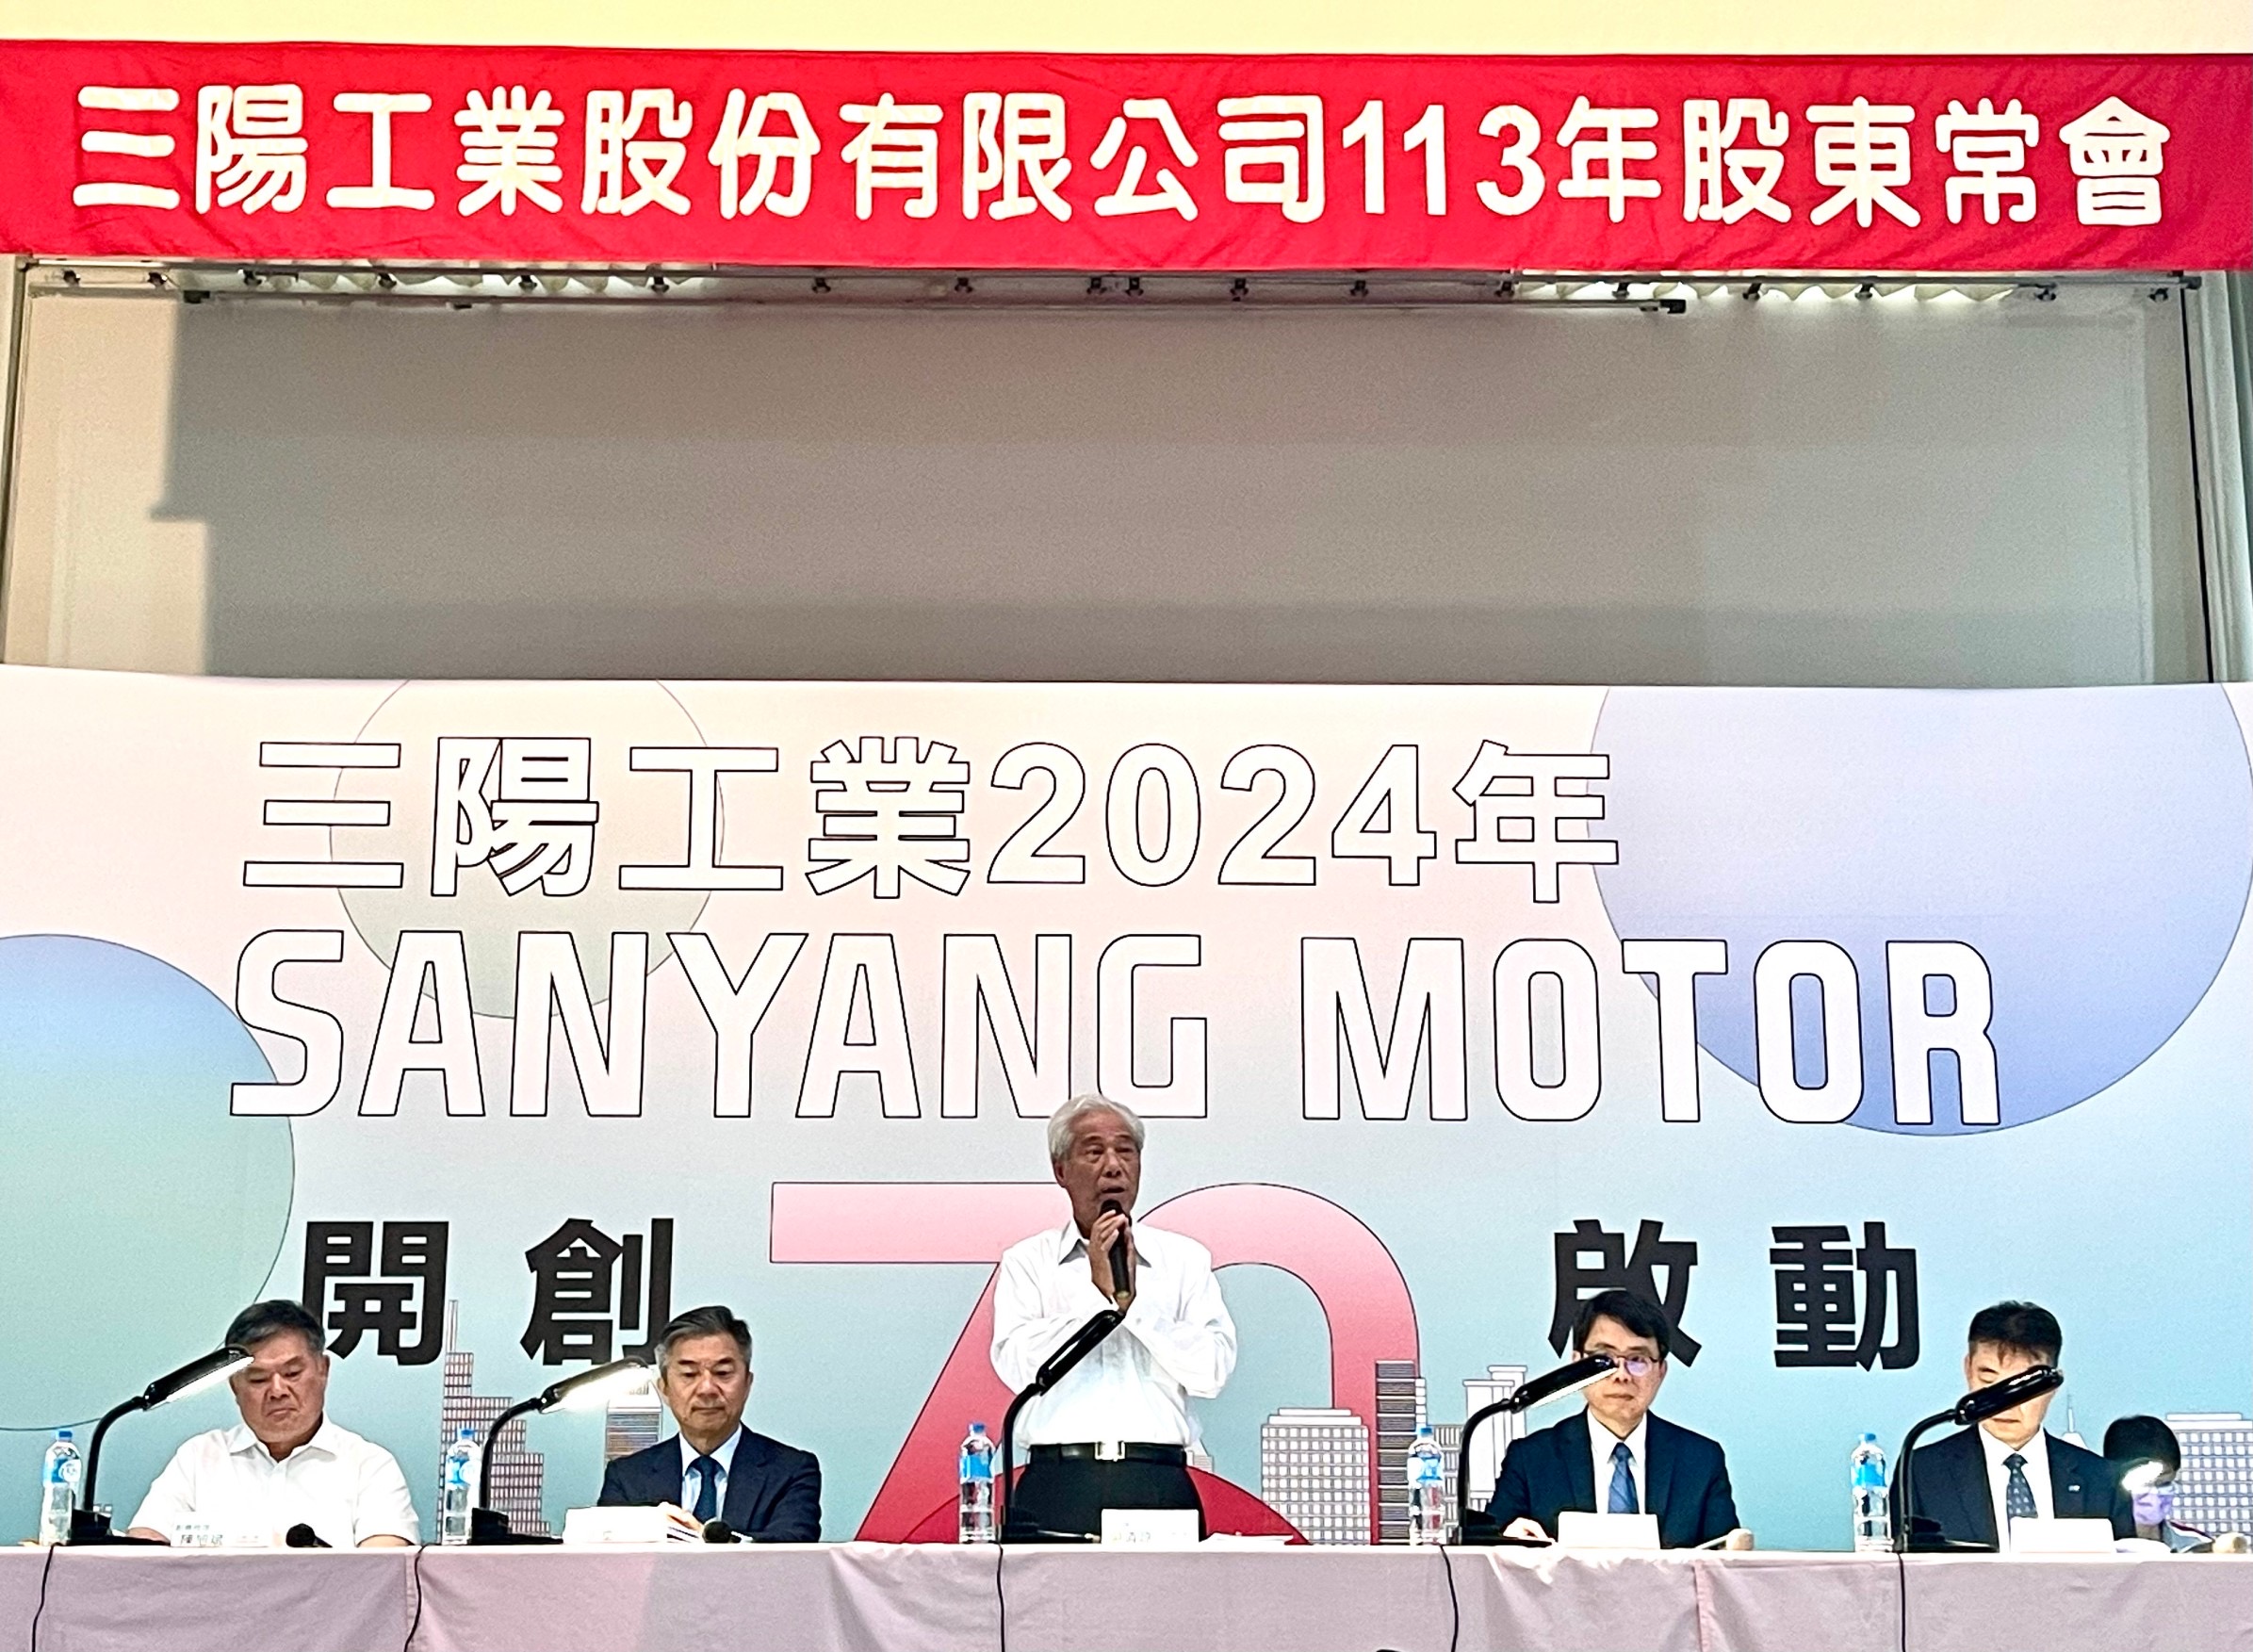 三阳公司董事长吴清源说三阳70周年将启动下一个三年计划再出发。（三阳公司提供）